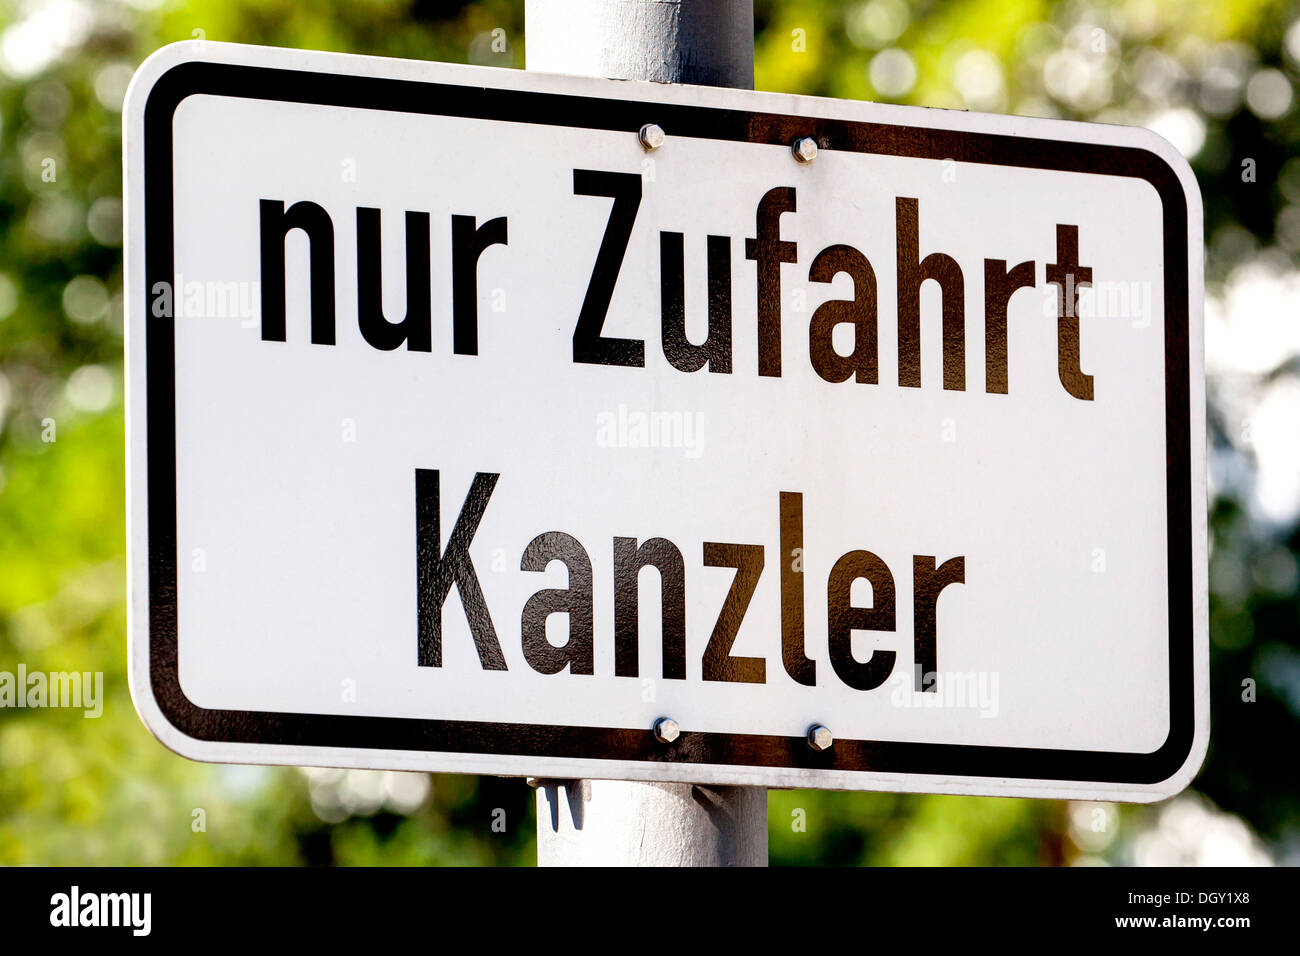 Zeichen, "Nur Zufahrt Kanzler", Deutsch für den Zugang nur für das Hotel Kanzler, Bonn, Rheinland, Nordrhein-Westfalen, Deutschland Stockfoto